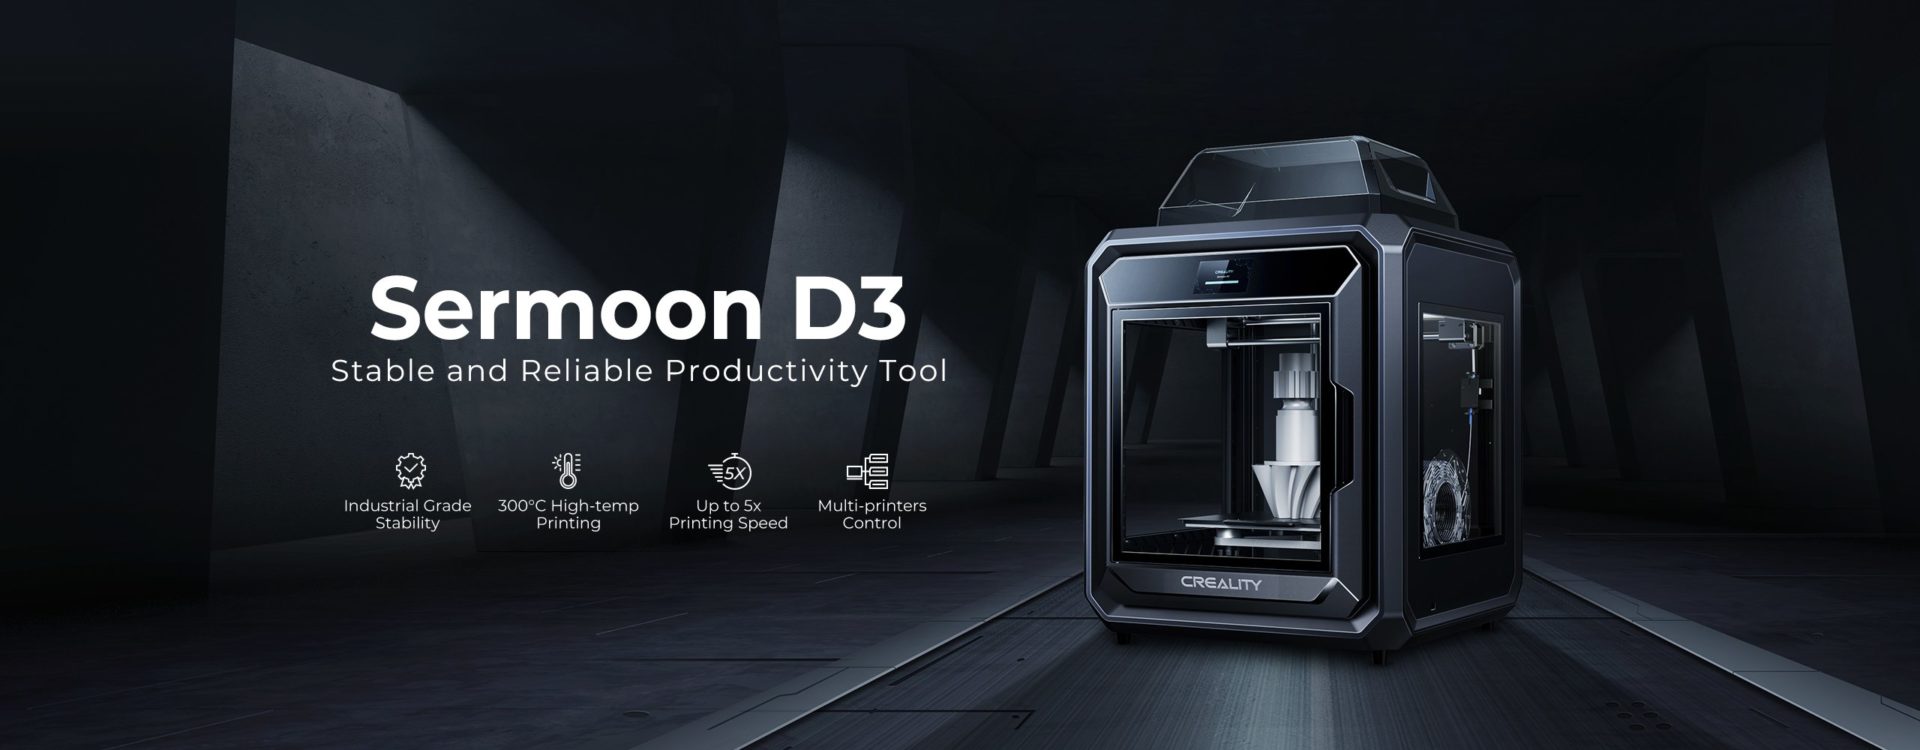 Crealityから工業デザイナー向けの３Dプリンター「Sermoon D3」が発表